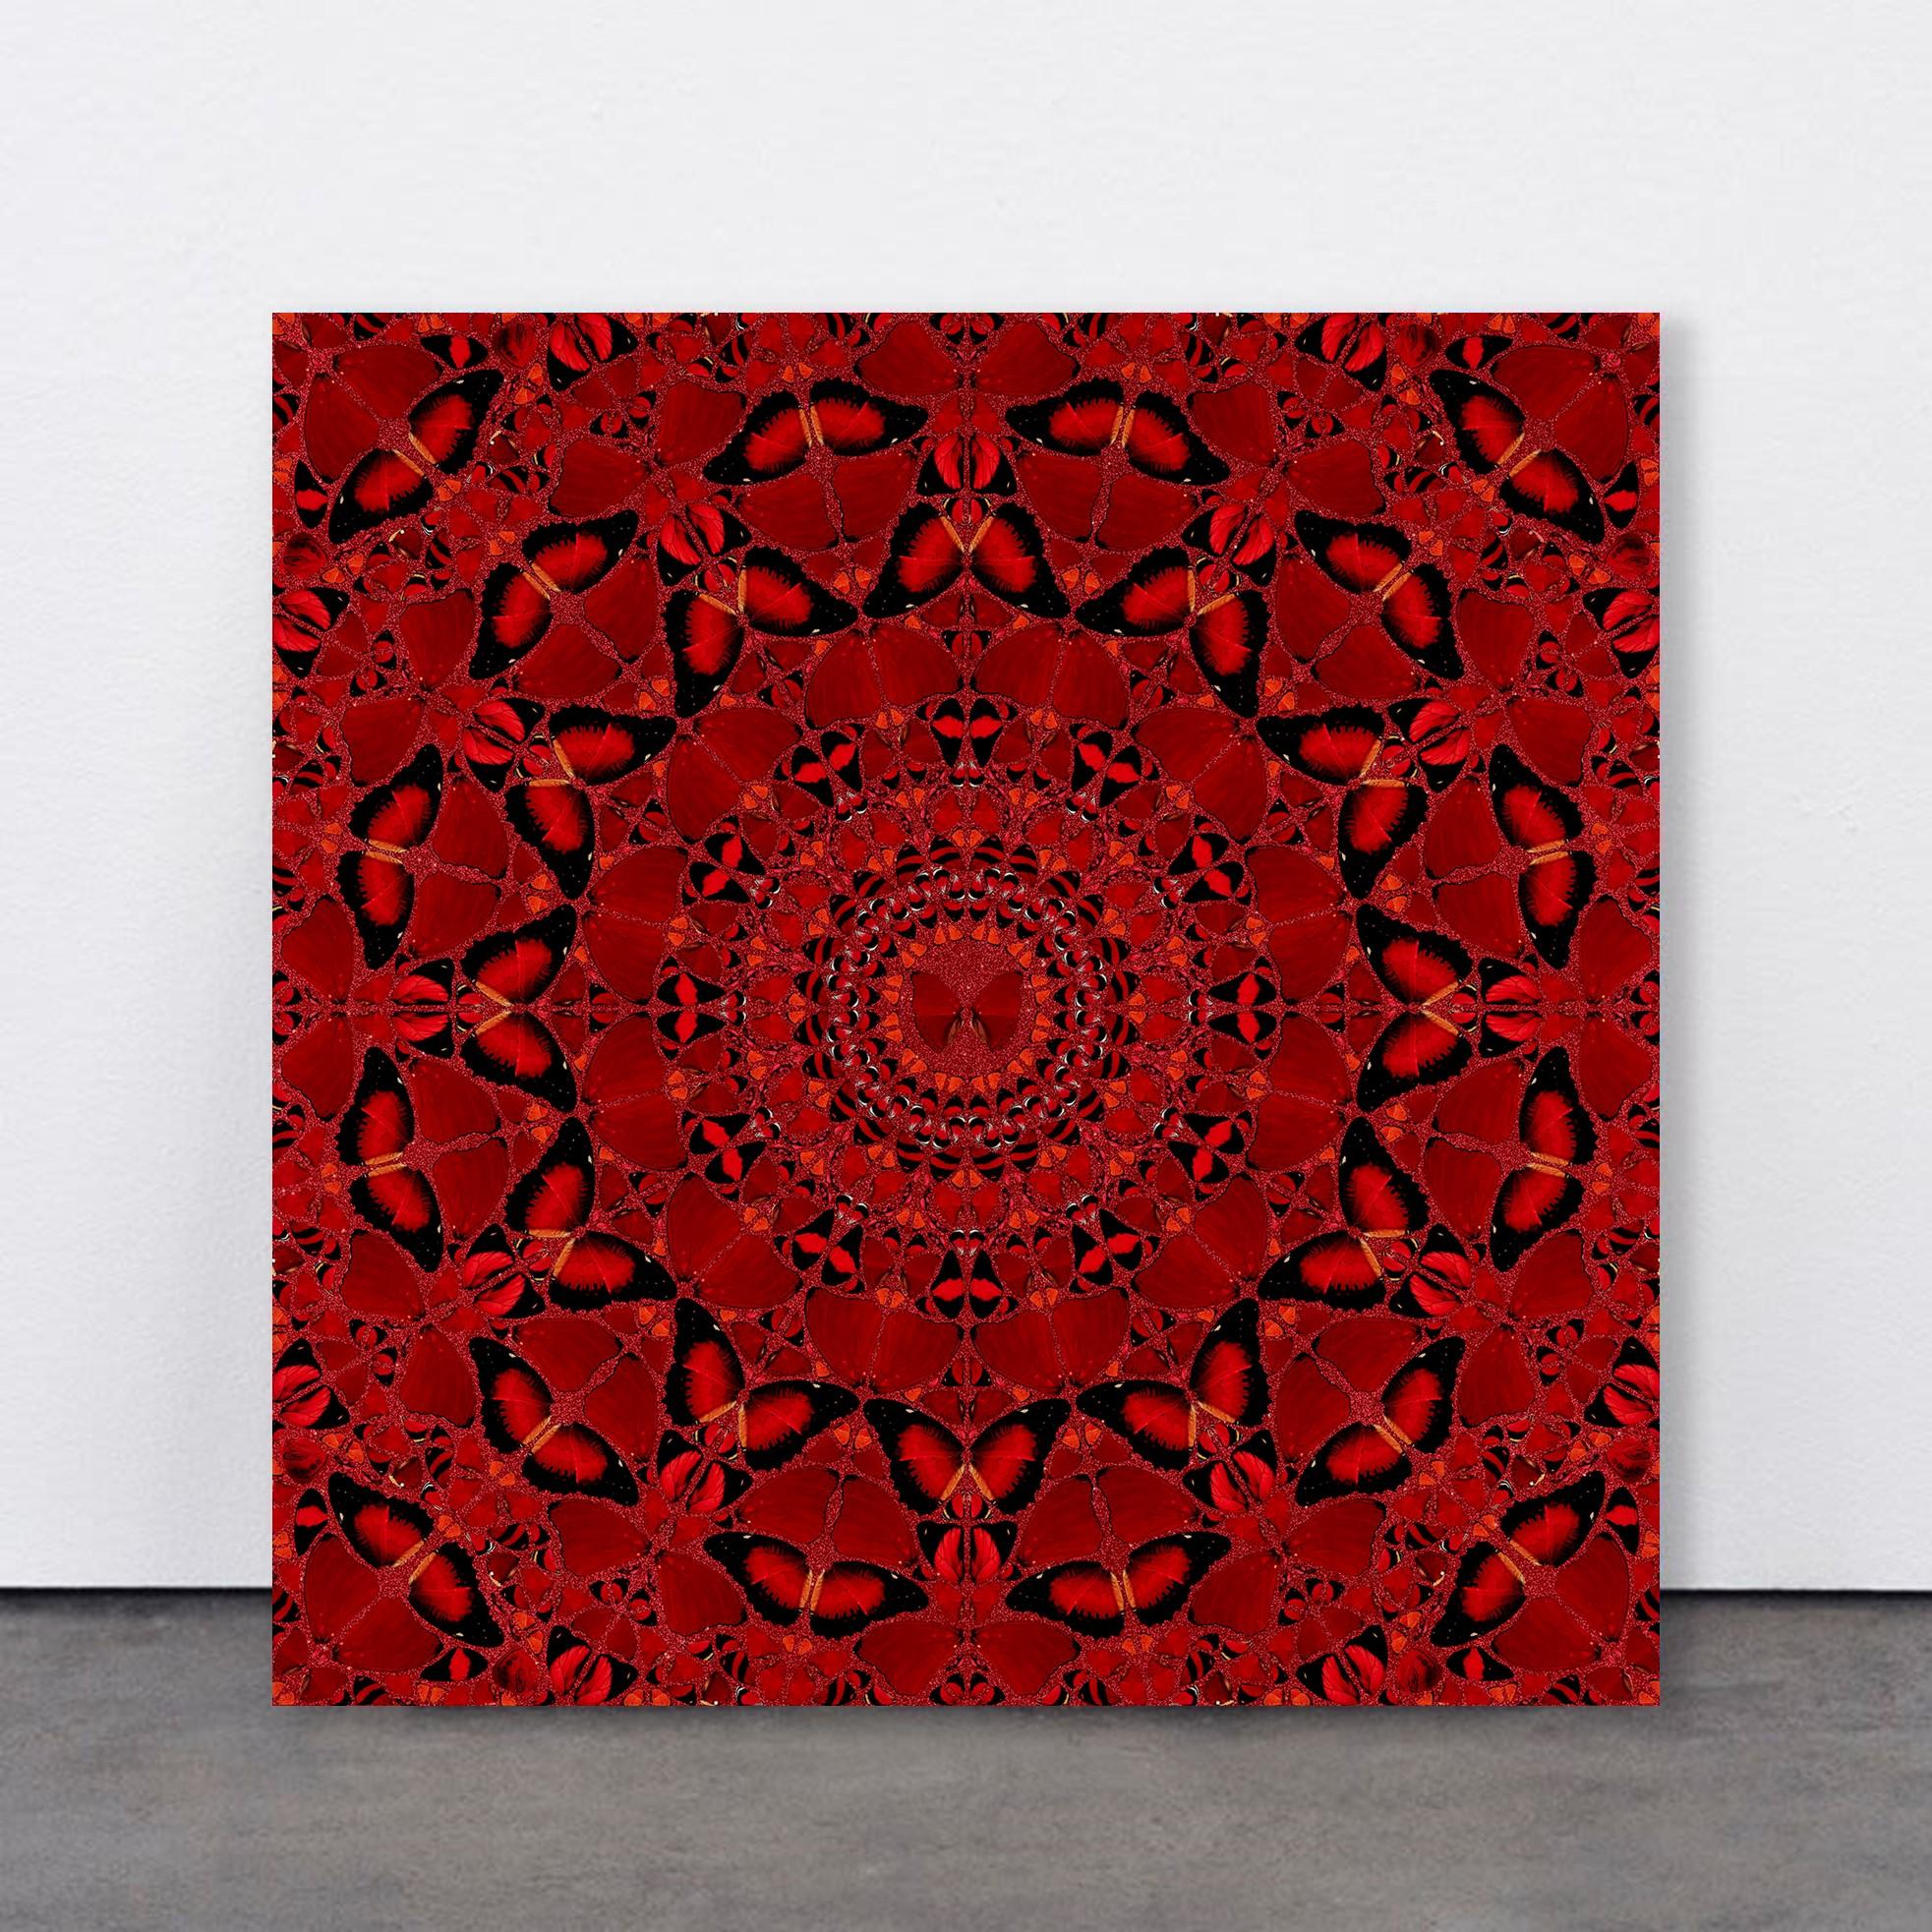 Suiko von Damien Hirst, Die Kaiserinnen, Rote Schmetterlinge, Kaleidoskop-Effekt